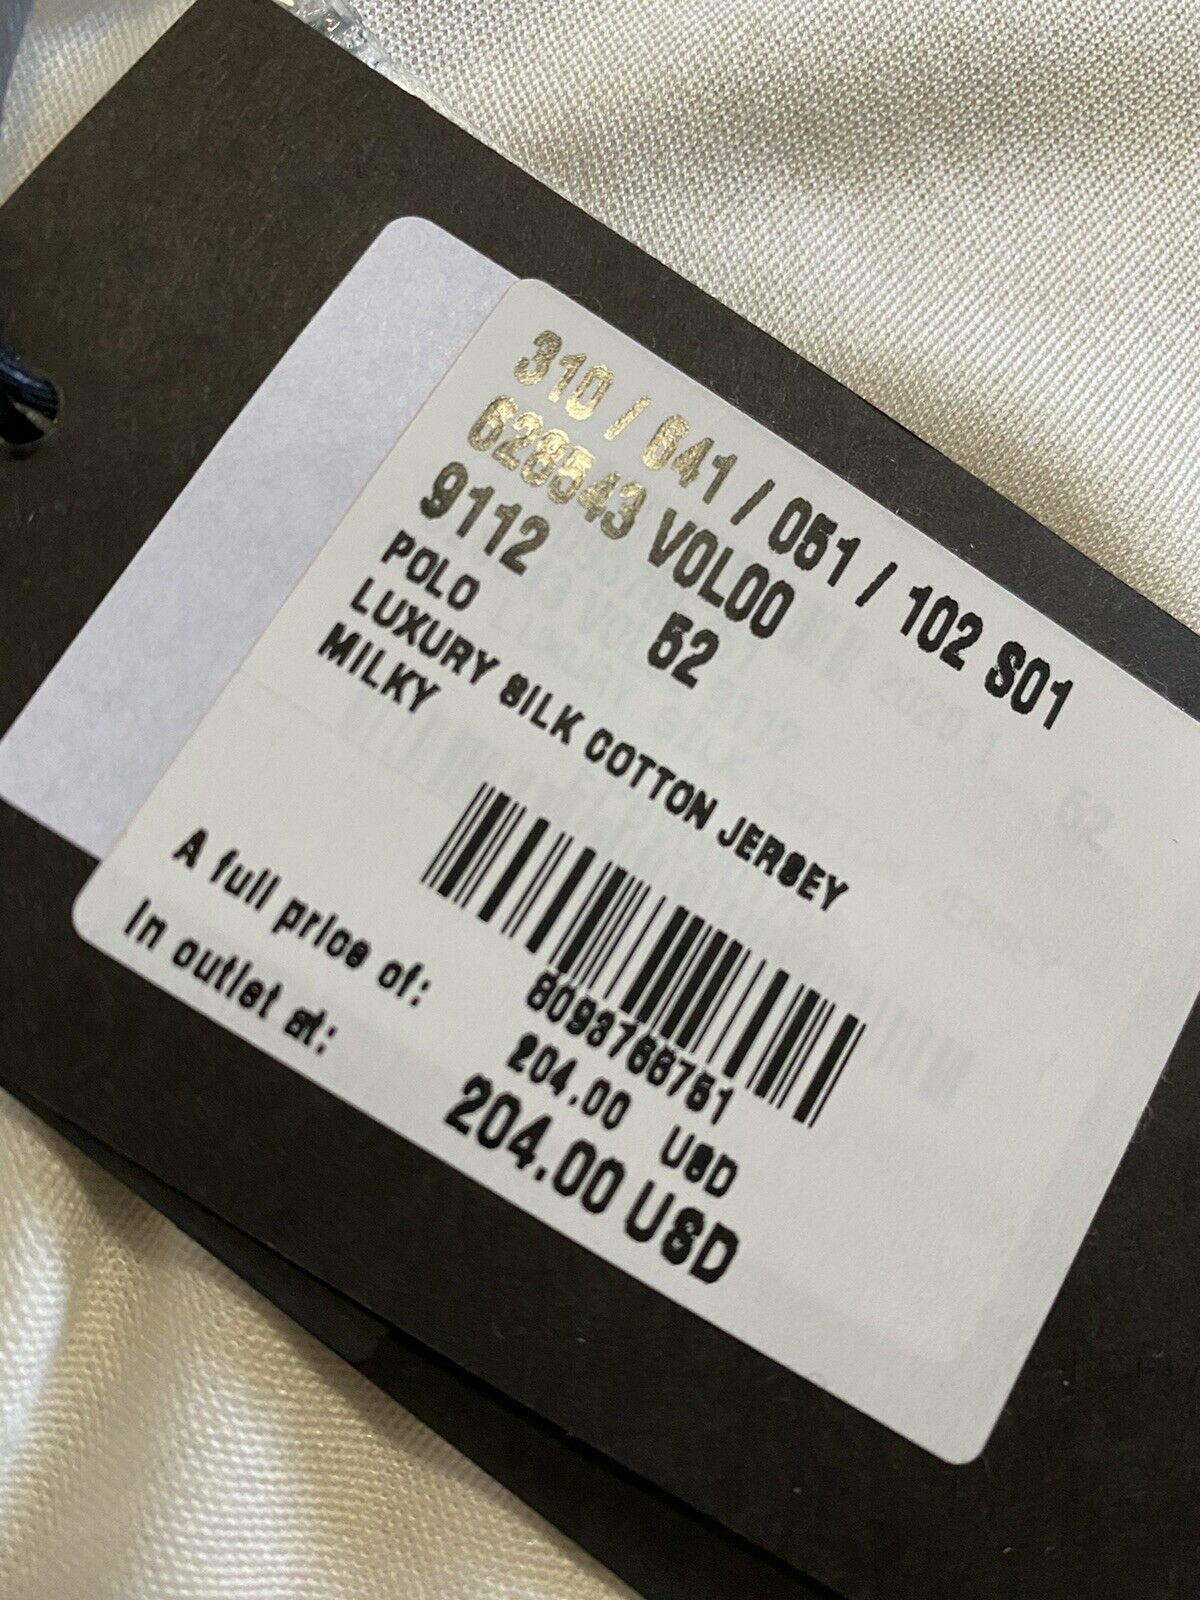 Мужская рубашка-поло кремового цвета Bottega Veneta, NWT, 490 долларов США (52 евро), Италия